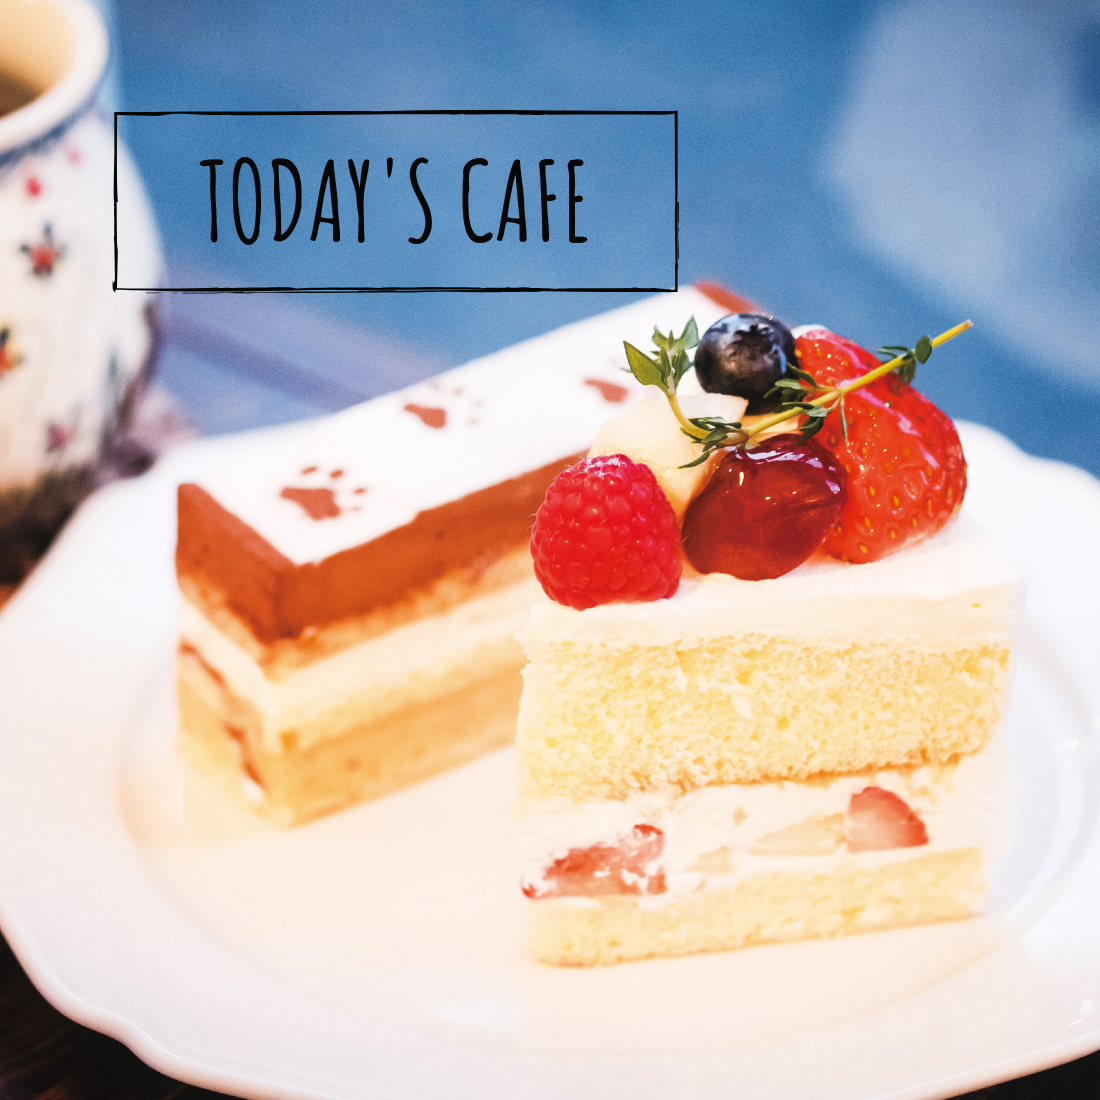 名古屋 鶴舞の素敵なケーキ屋 Cake Cafe Nicol ニコル でカフェタイム 日刊ケリー